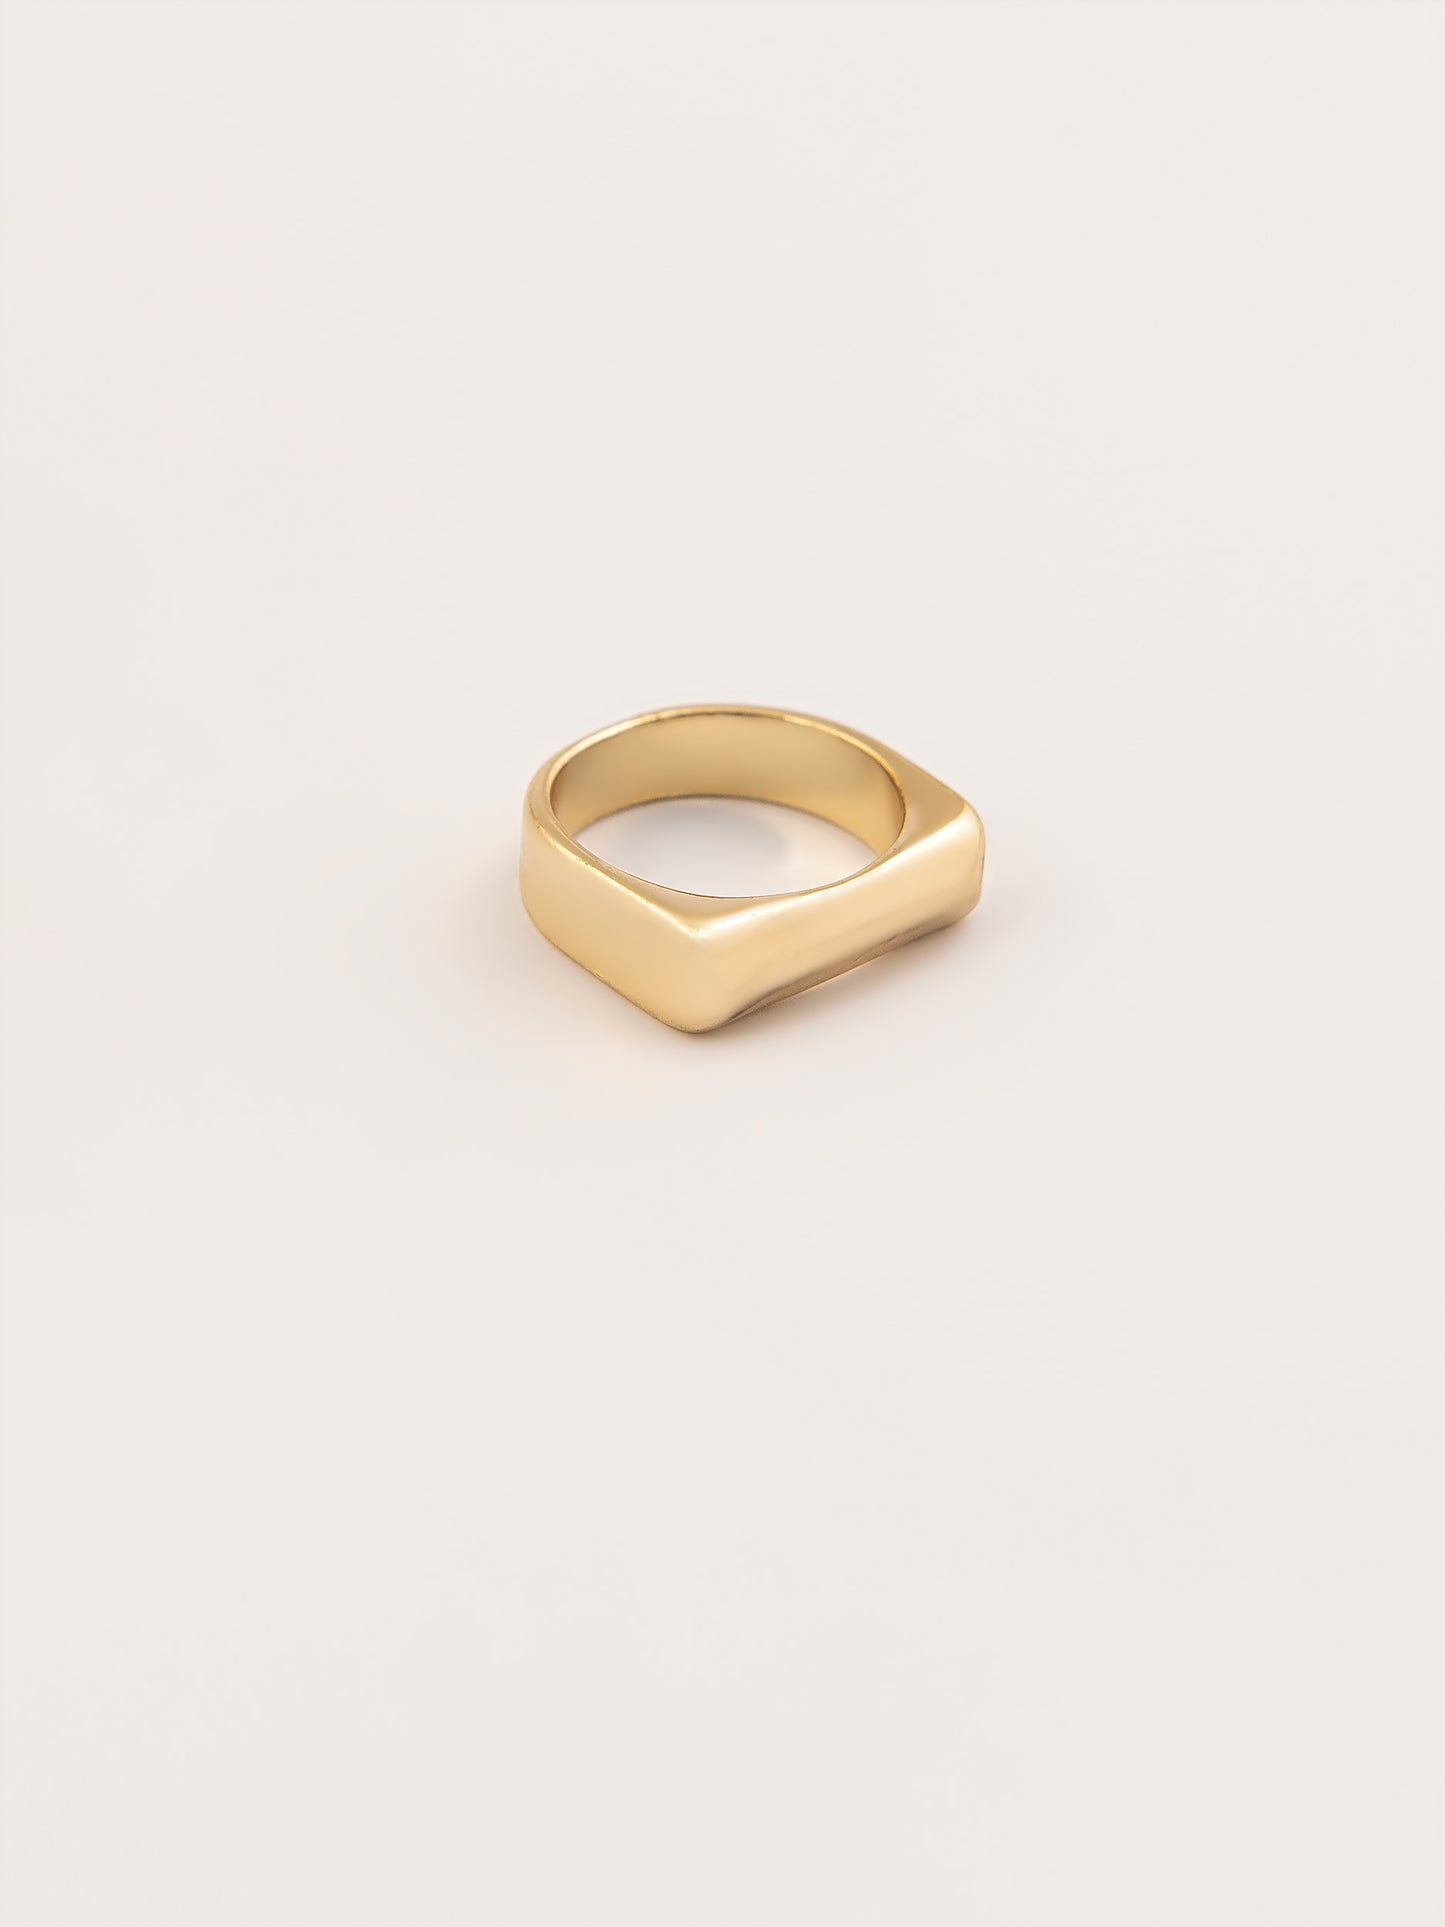 Gold Embellished Ring Set